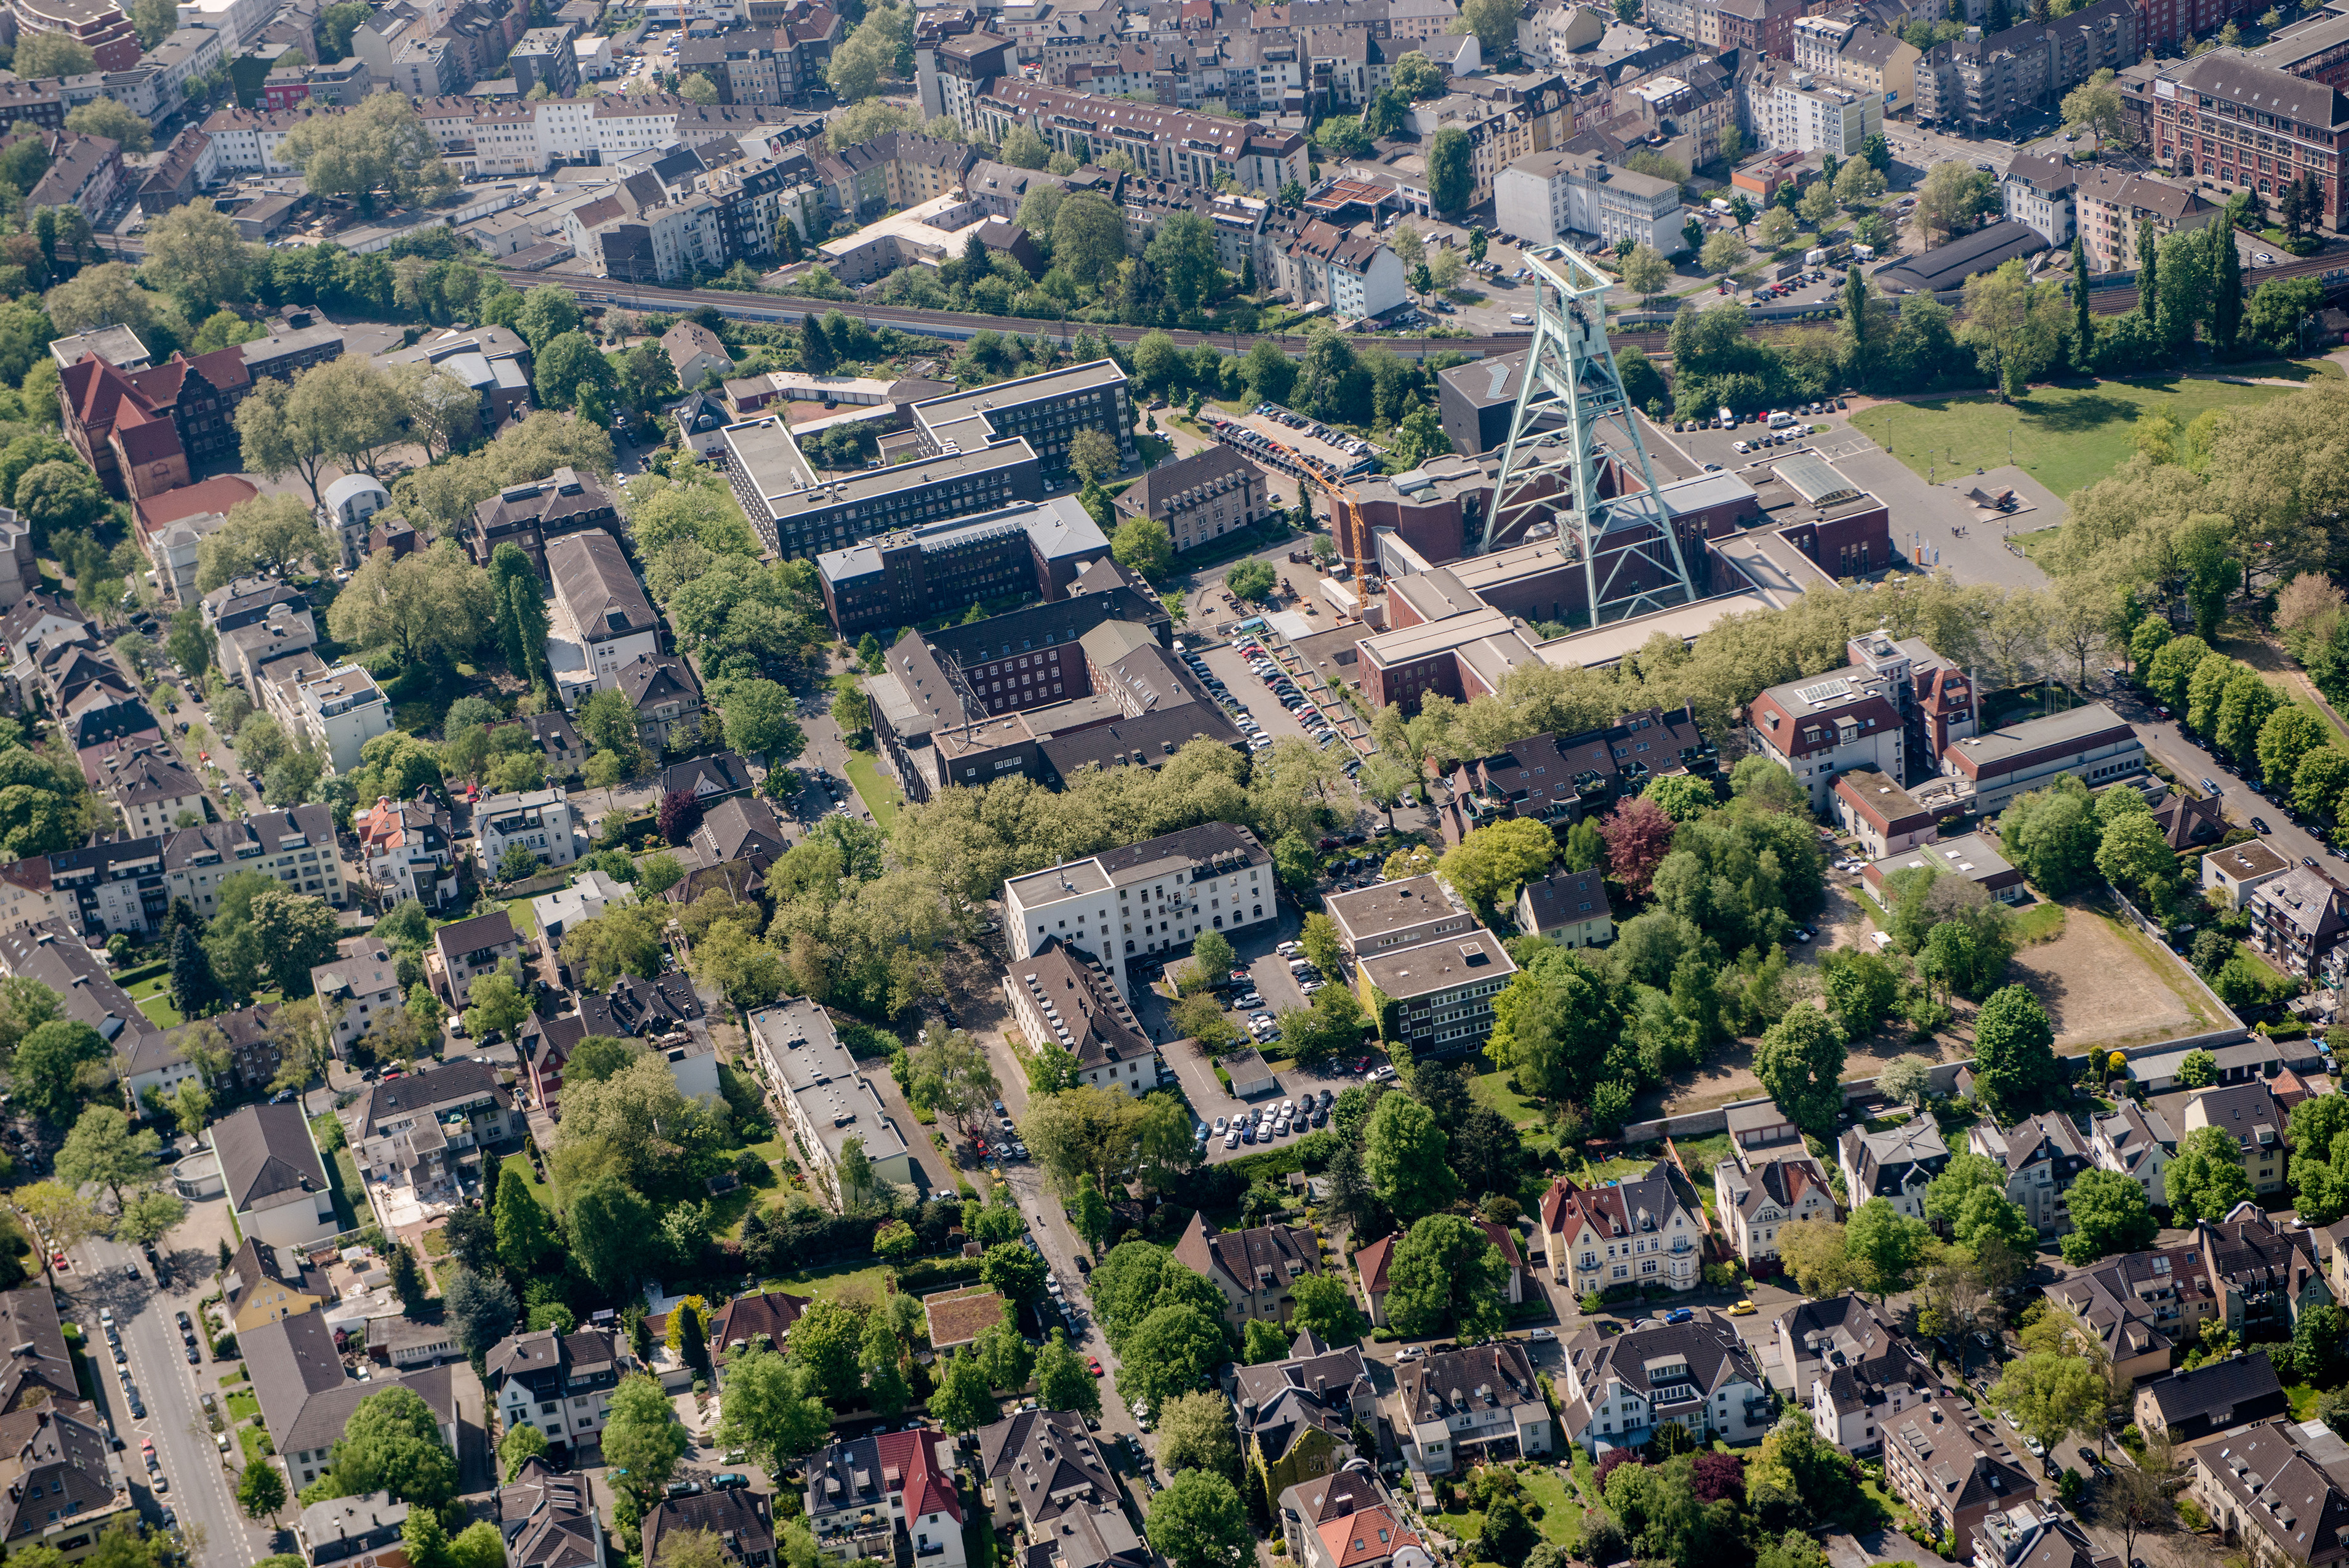 Aerial view of the Bochum city park quarter with Bergbaumuseum